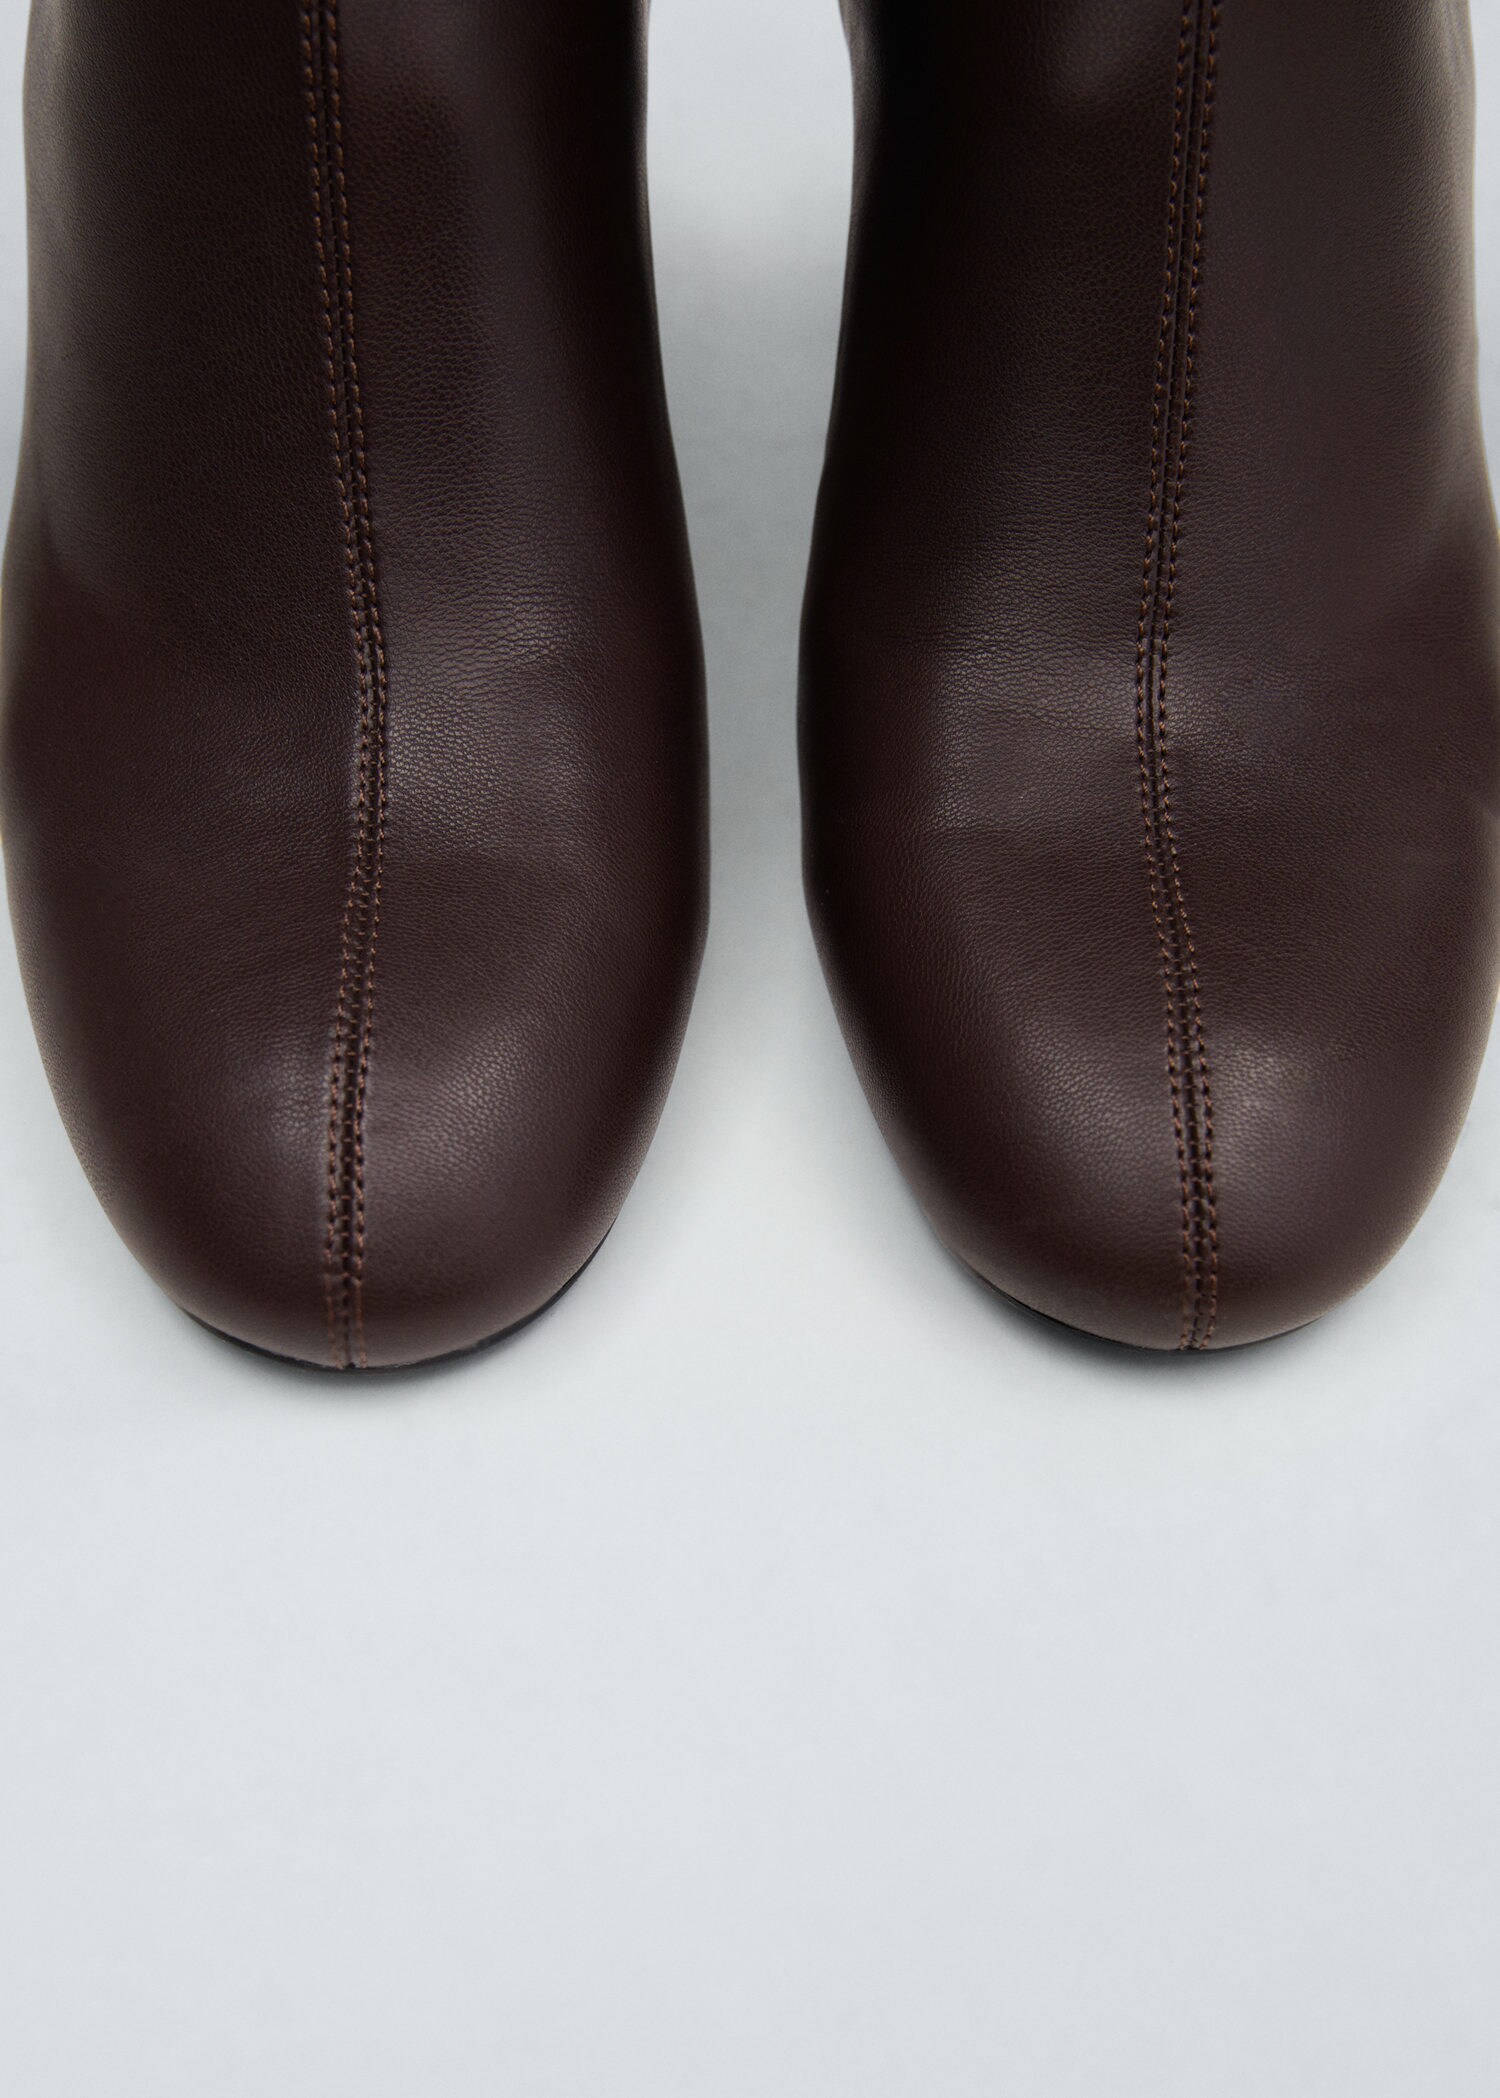 Round-toe heeled ankle boots | MANGO